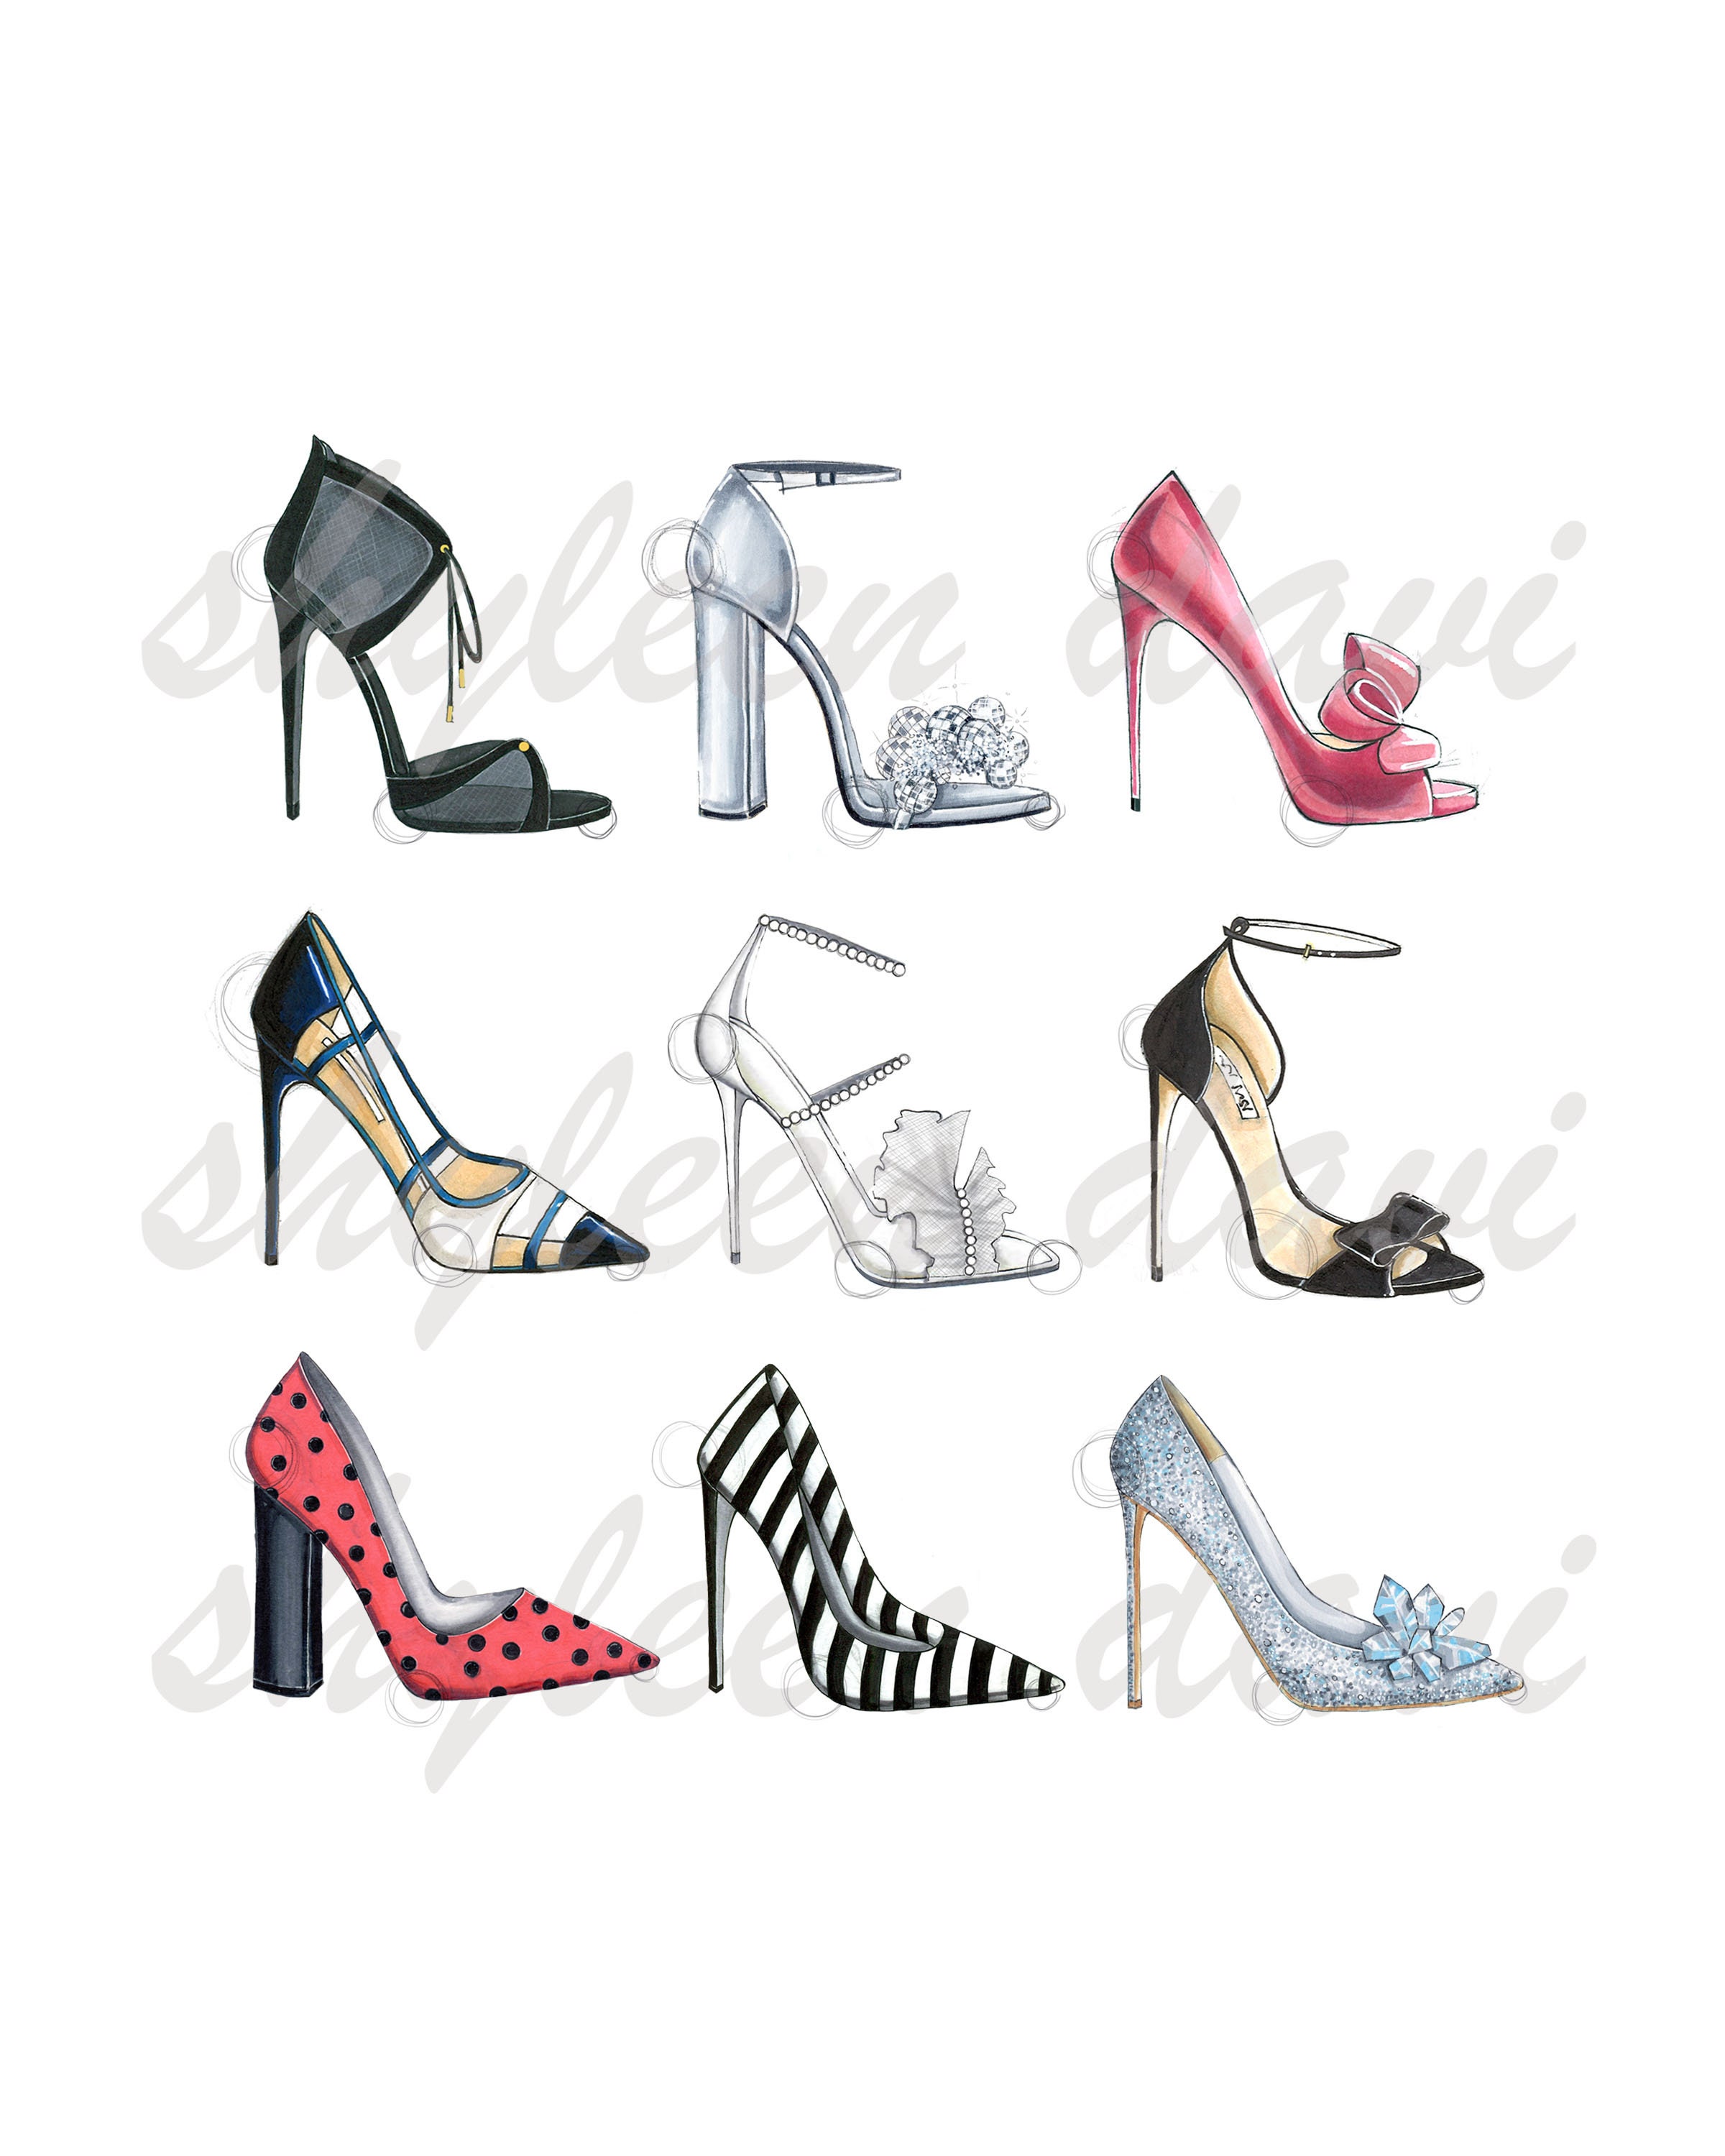 Garneck Crystal High Heels Shoes Ornament, Pink Glass Slipper Girls  Princess Decor Dress Slipper Fig…See more Garneck Crystal High Heels Shoes